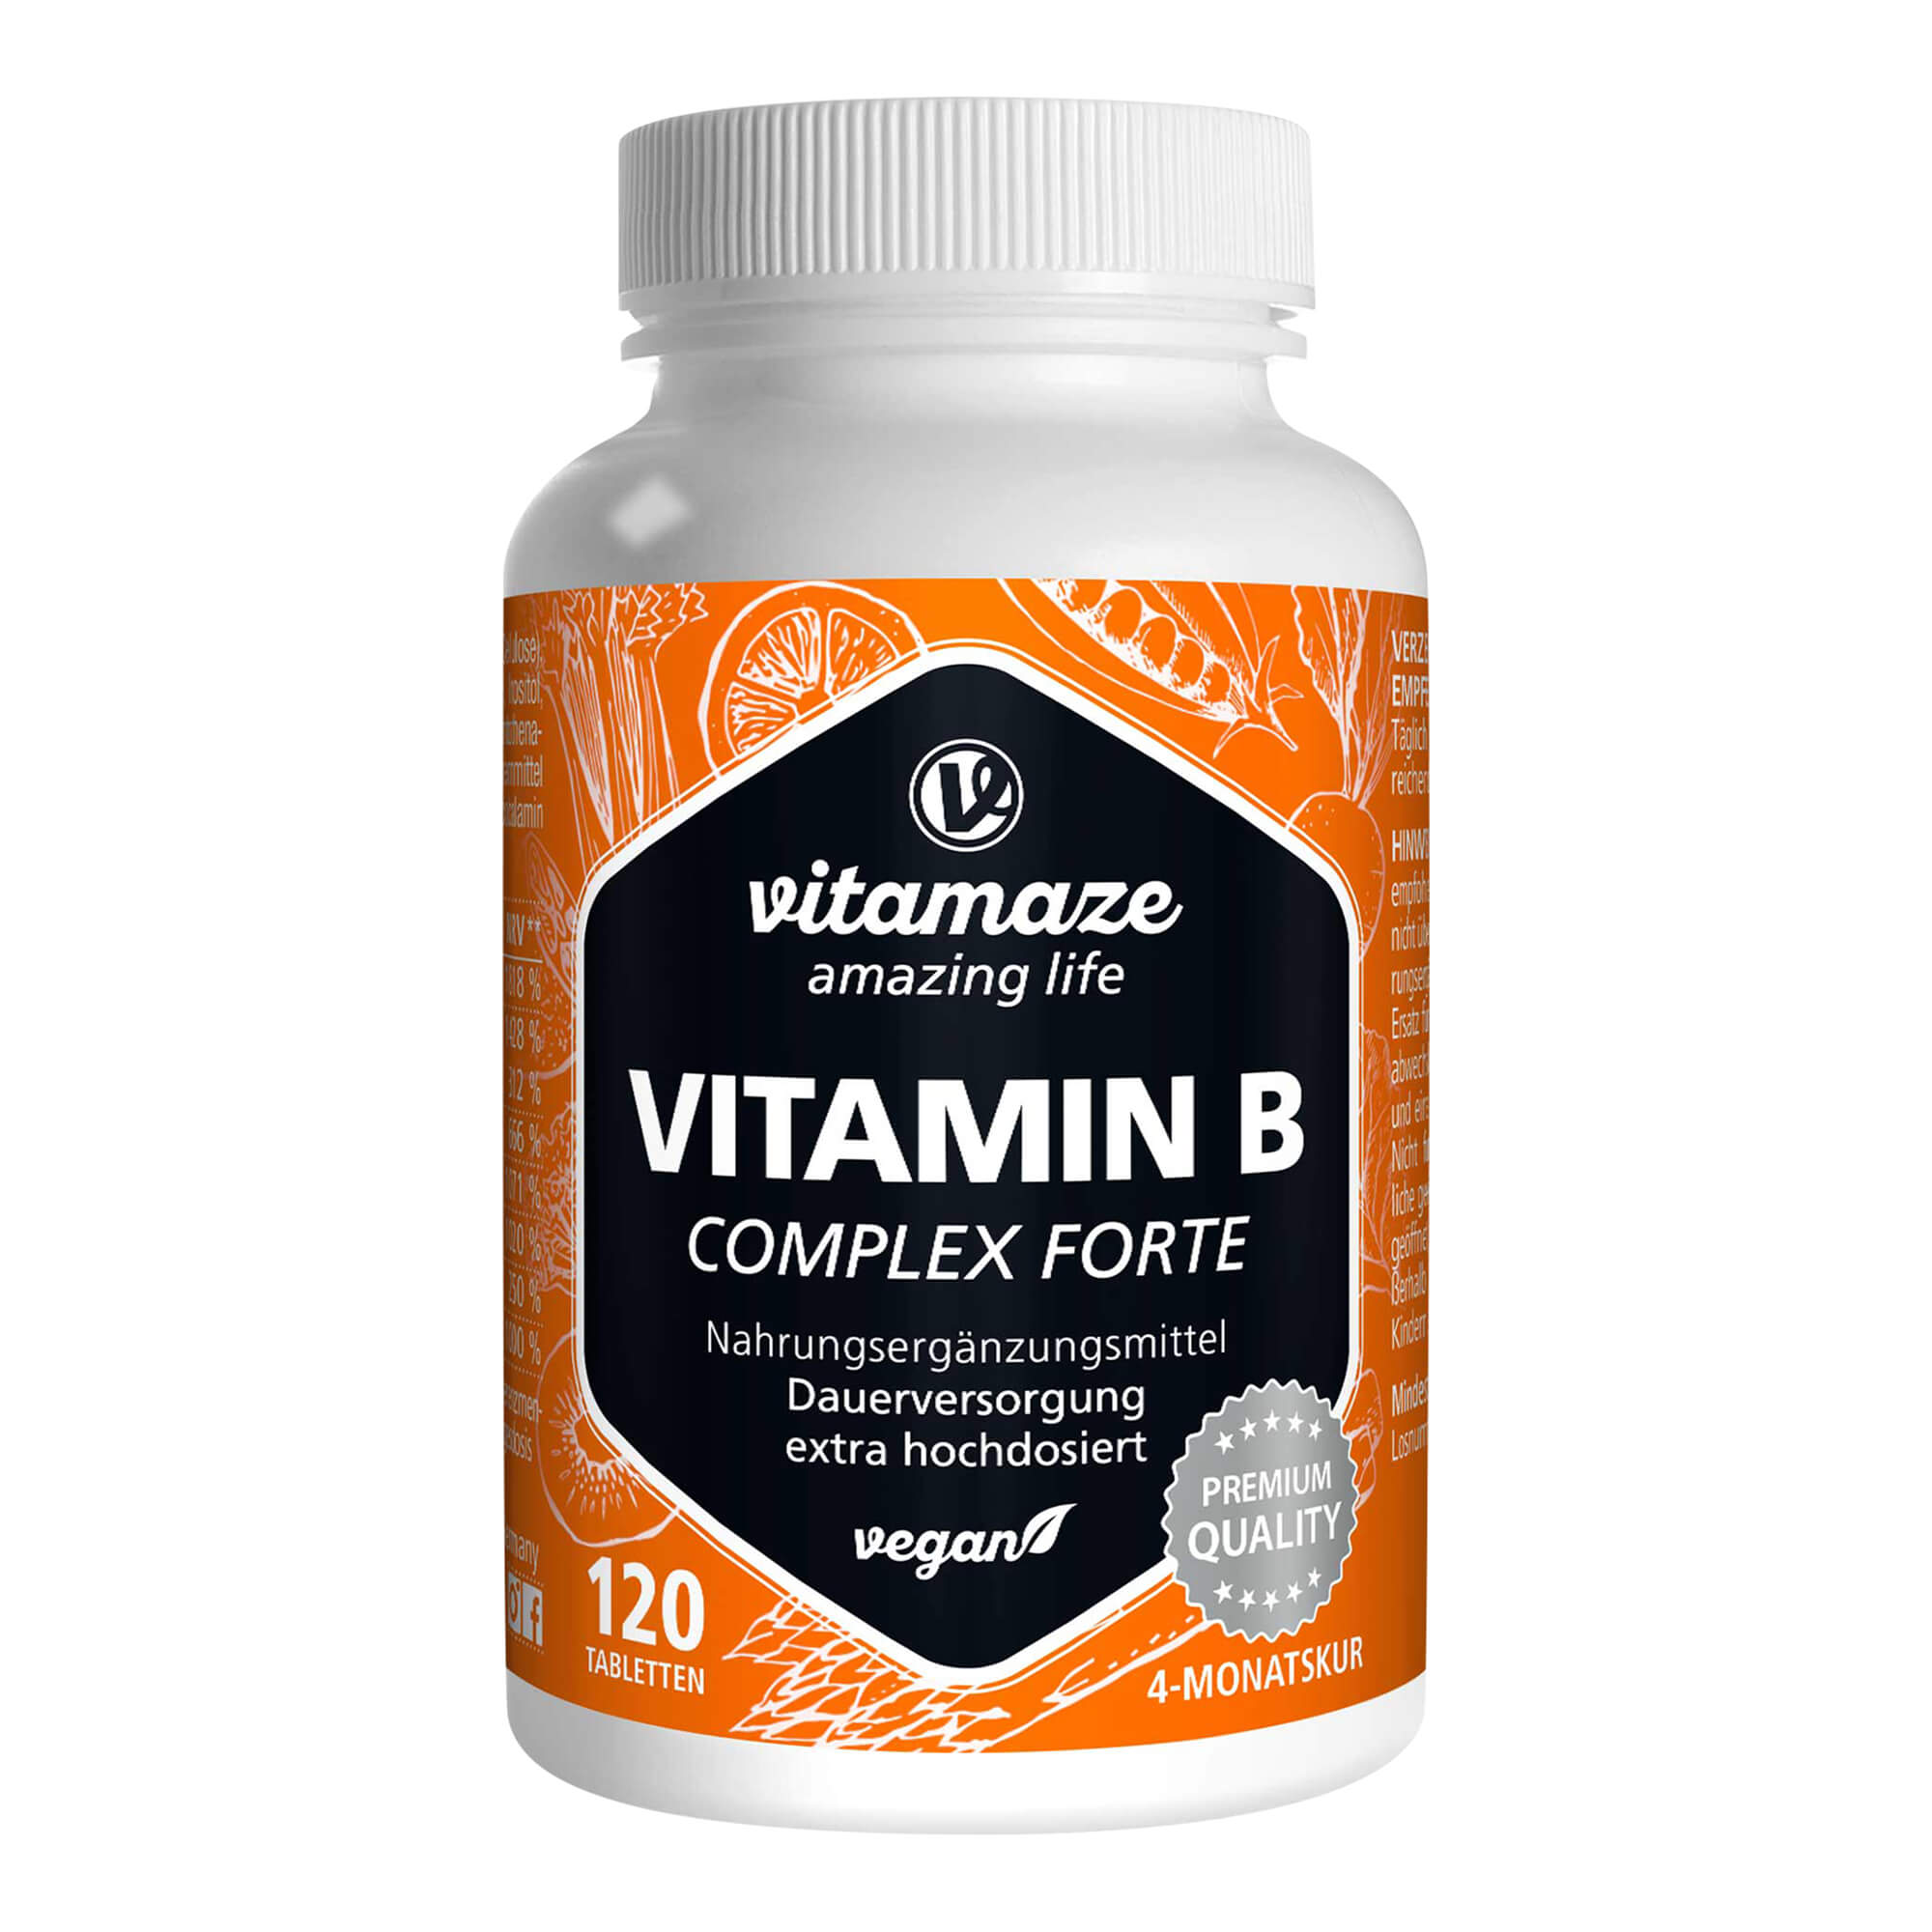 Nahrungsergänzungsmittel mit allen essentiellen B-Vitamine in extra hochdosierter Form. Für Nerven, Zellen, Psyche & Immunsystem.